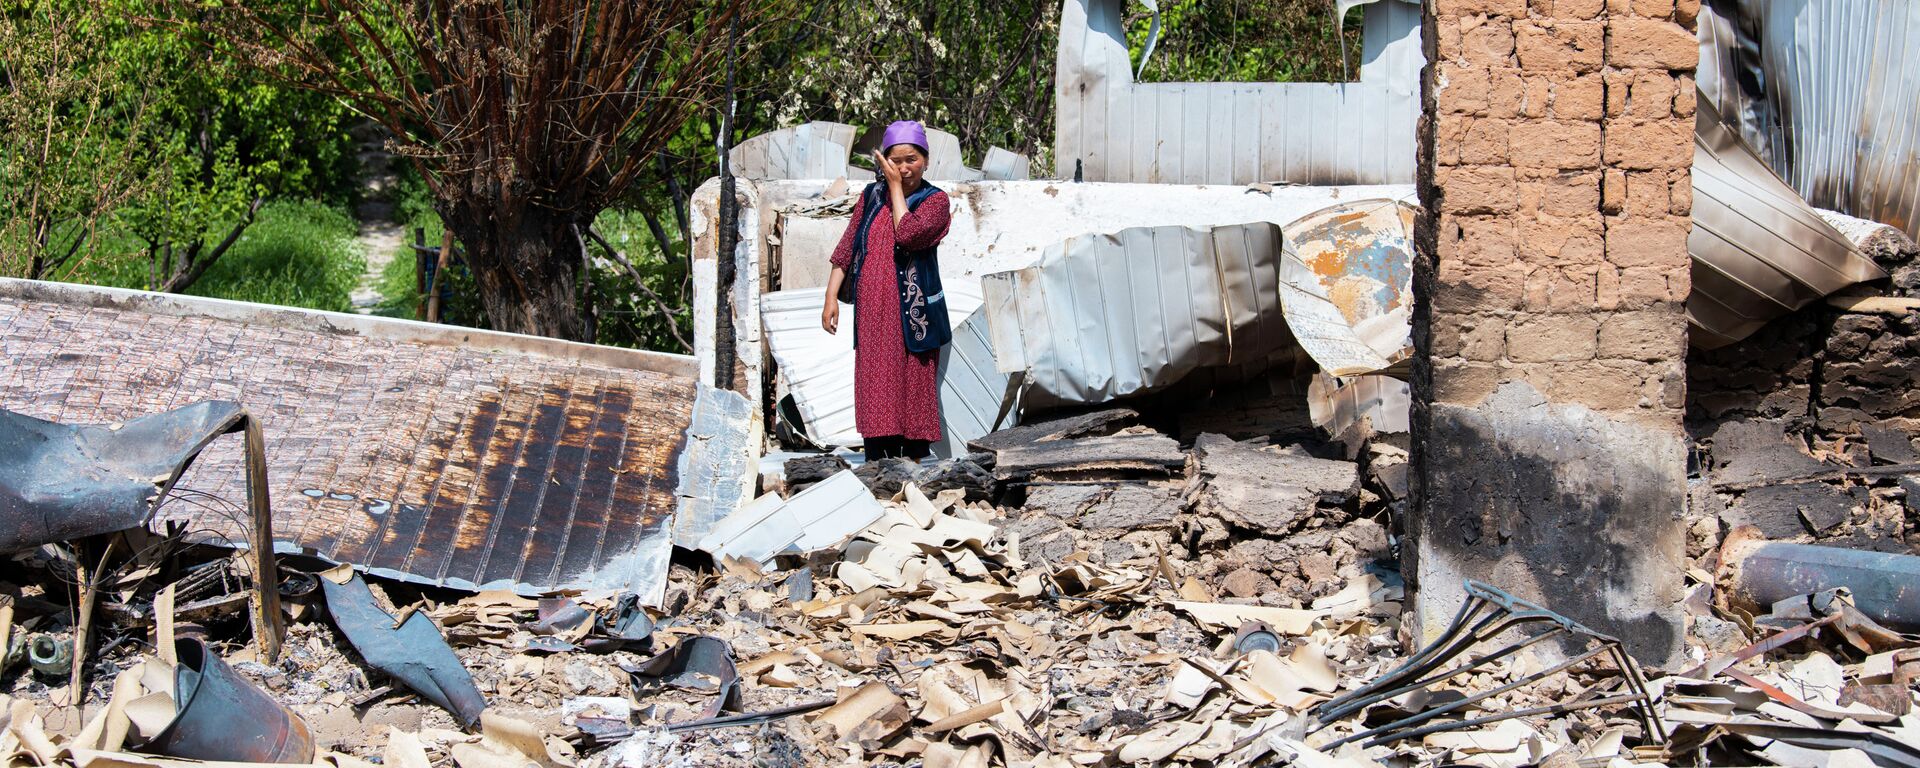 Жительница села Максат Лейлекского района возле своего дома, сгоревшего в ходе приграничного конфликта между Кыргызстаном и Таджикистаном - Sputnik Кыргызстан, 1920, 10.02.2022